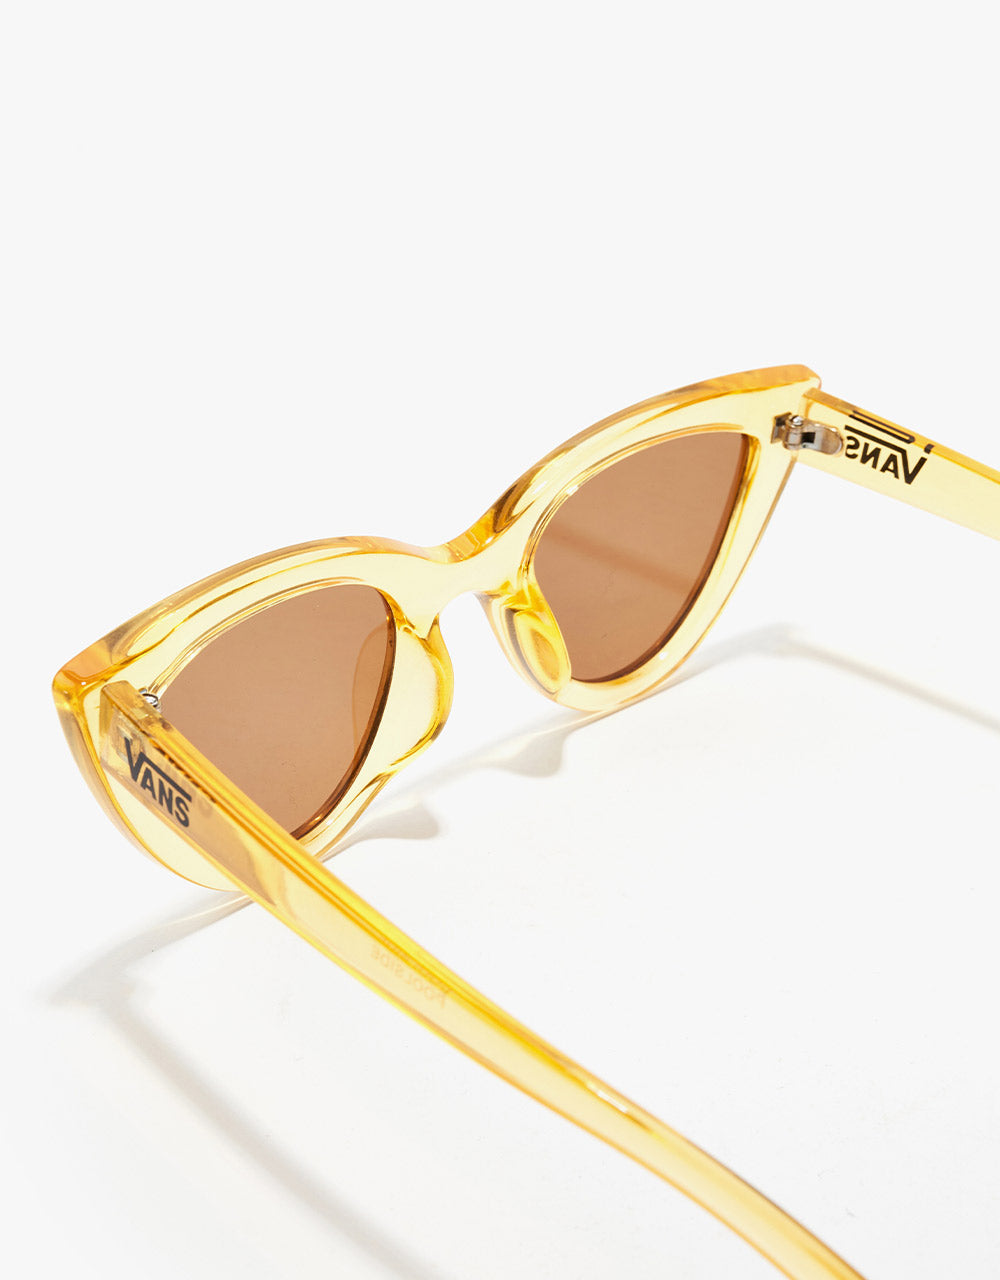 Vans Womens Poolside Sunglasses - Flax